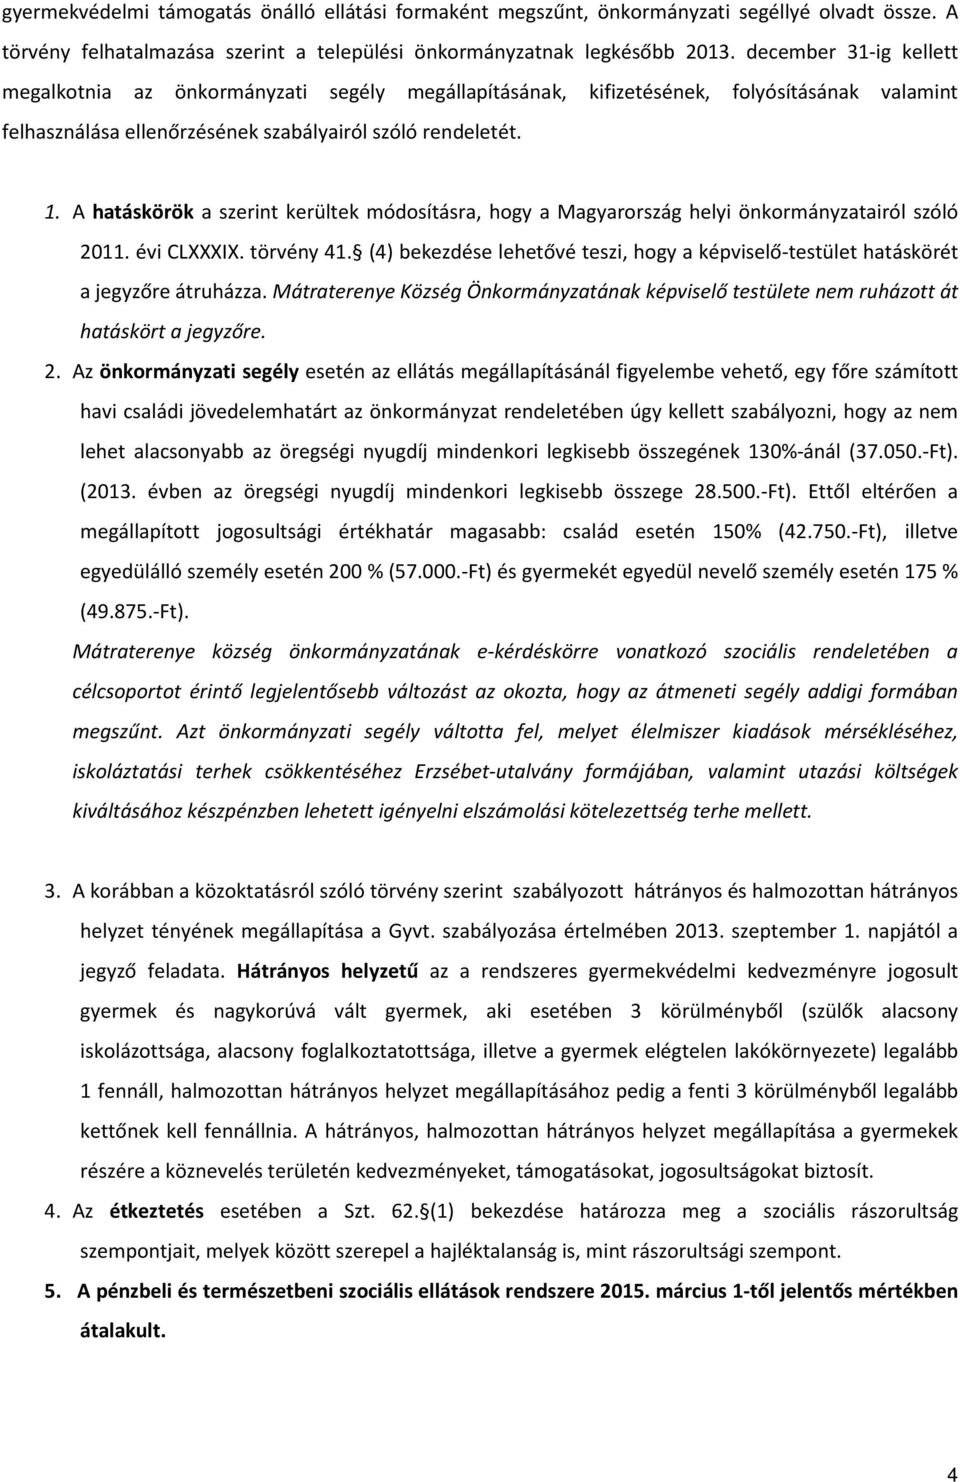 A hatáskörök a szerint kerültek módosításra, hogy a Magyarország helyi önkormányzatairól szóló 2011. évi CLXXXIX. törvény 41.